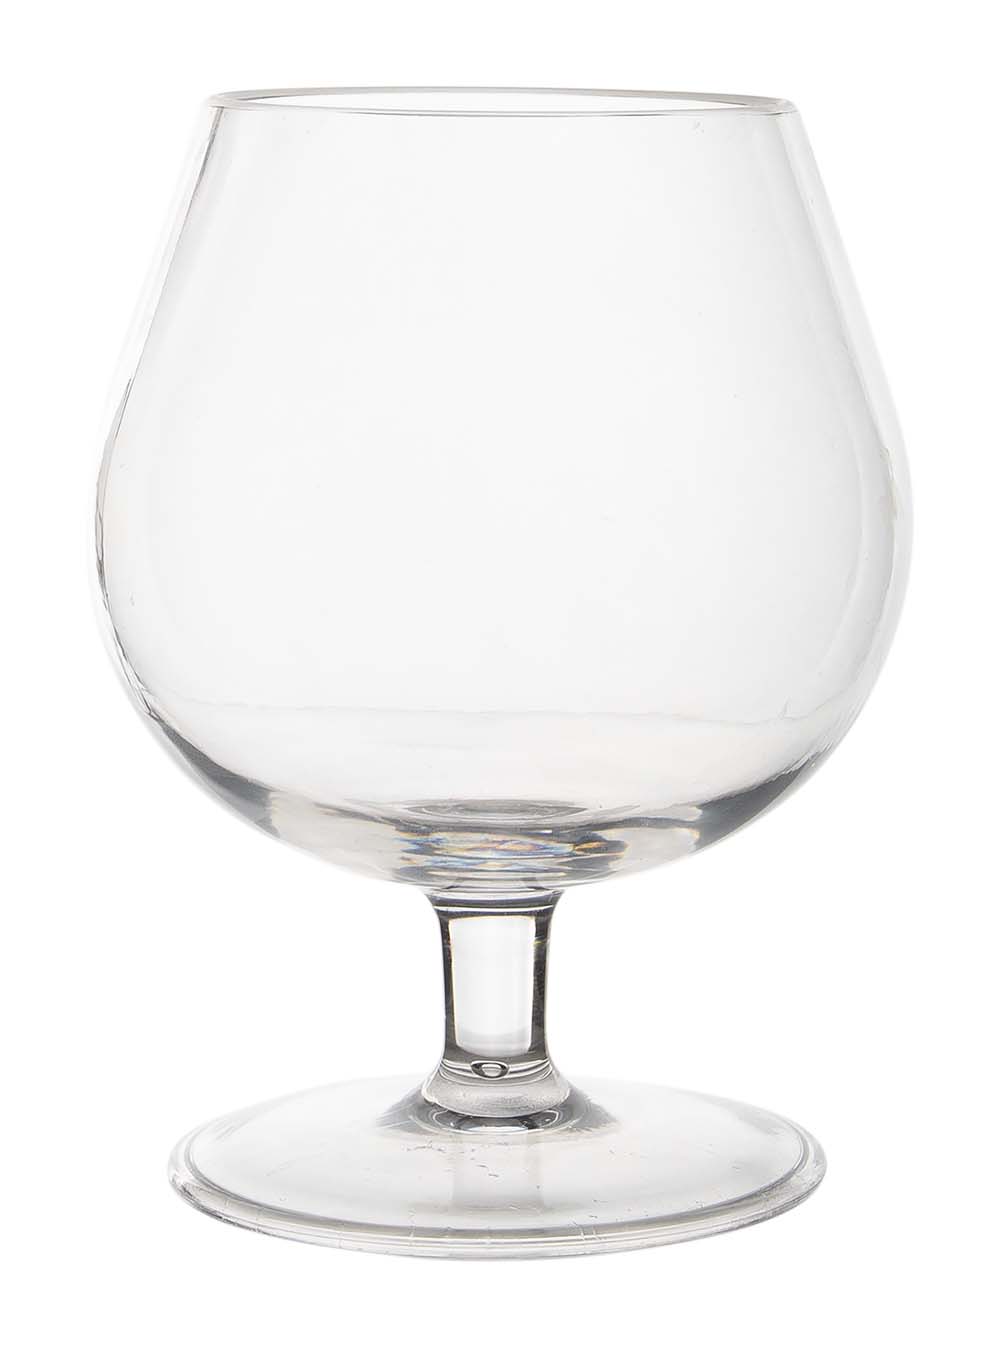 6919135 Een cognacglas uit de Linea line collectie. Vrijwel onbreekbaar door hoogwaardig Tritan materiaal. Bestaat uit een set van 2 stuks. Zeer gemakkelijk te reinigen en langdurig te gebruiken, wat het glas erg duurzaam maakt. Daarnaast is het cognacglas lichtgewicht en krasbestendig. Inhoud: 280 ml.